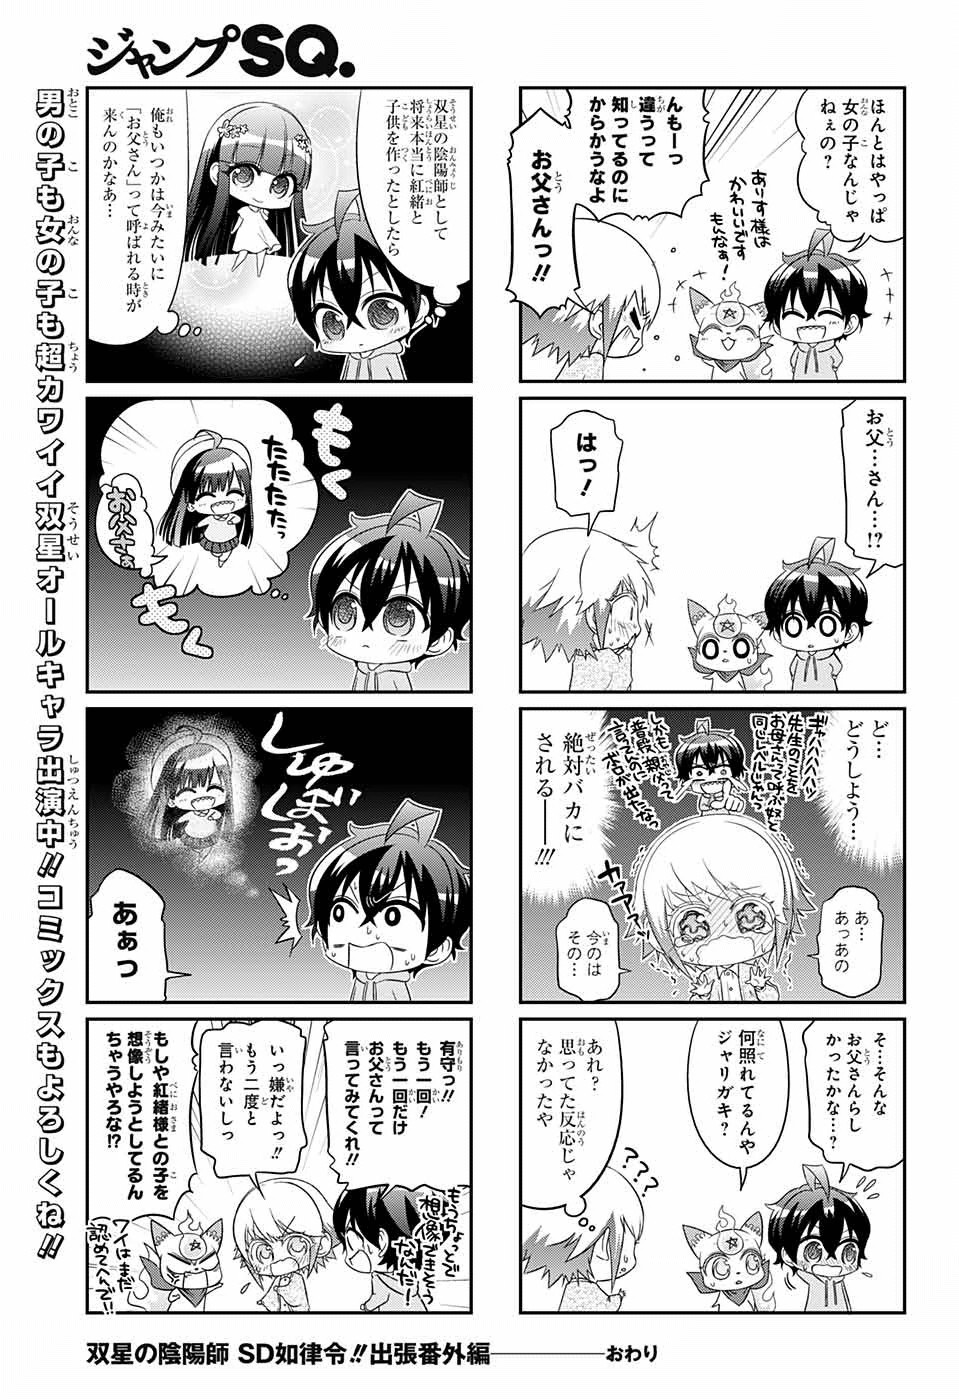 Sousei no Onmyouji - Chapter 41.5 - Page 45